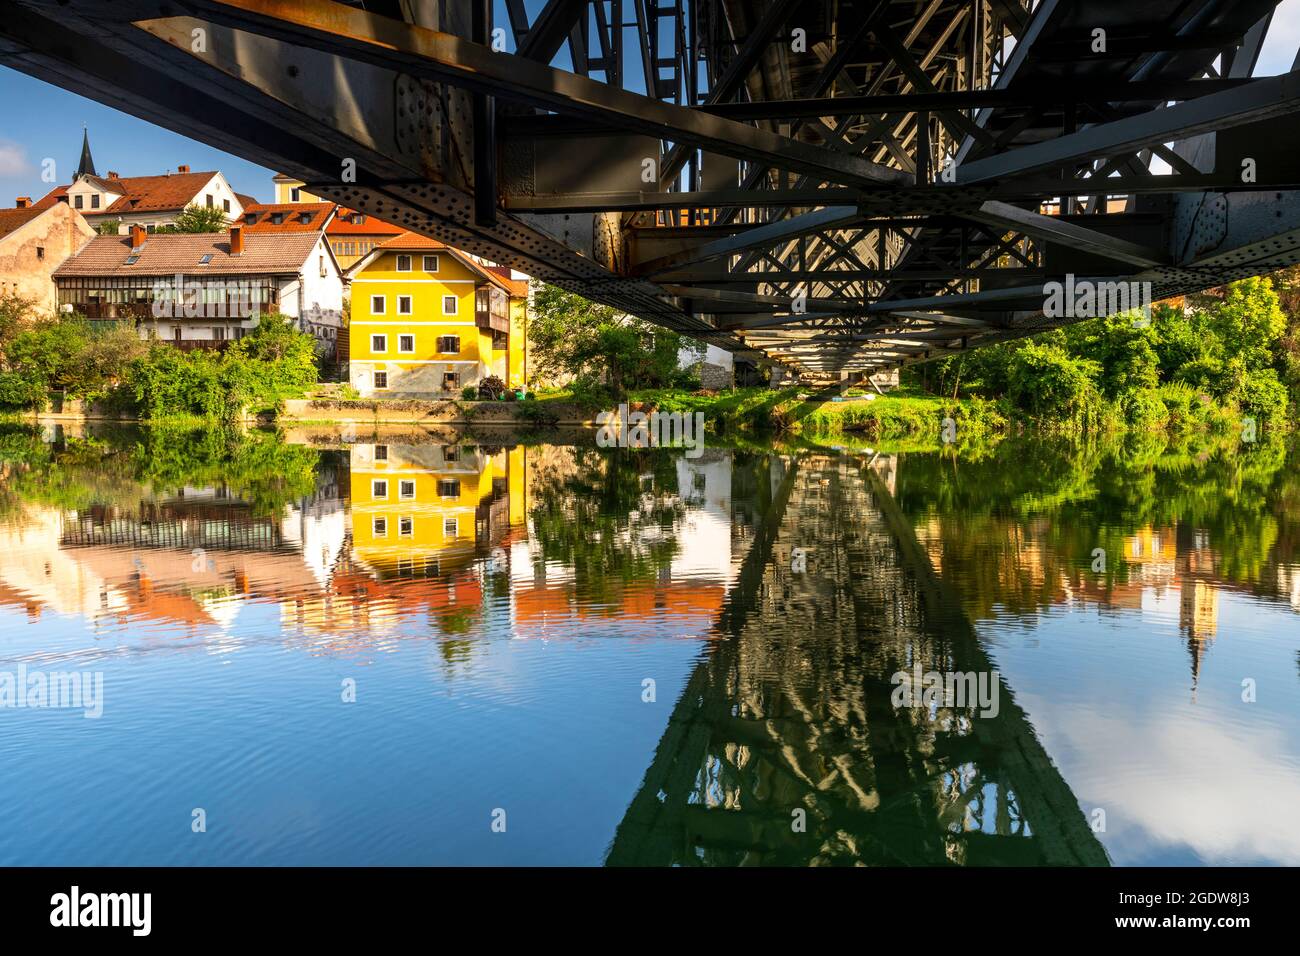 Kandija Bridge in Novo Mesto Slovenia at Krka River. Stock Photo